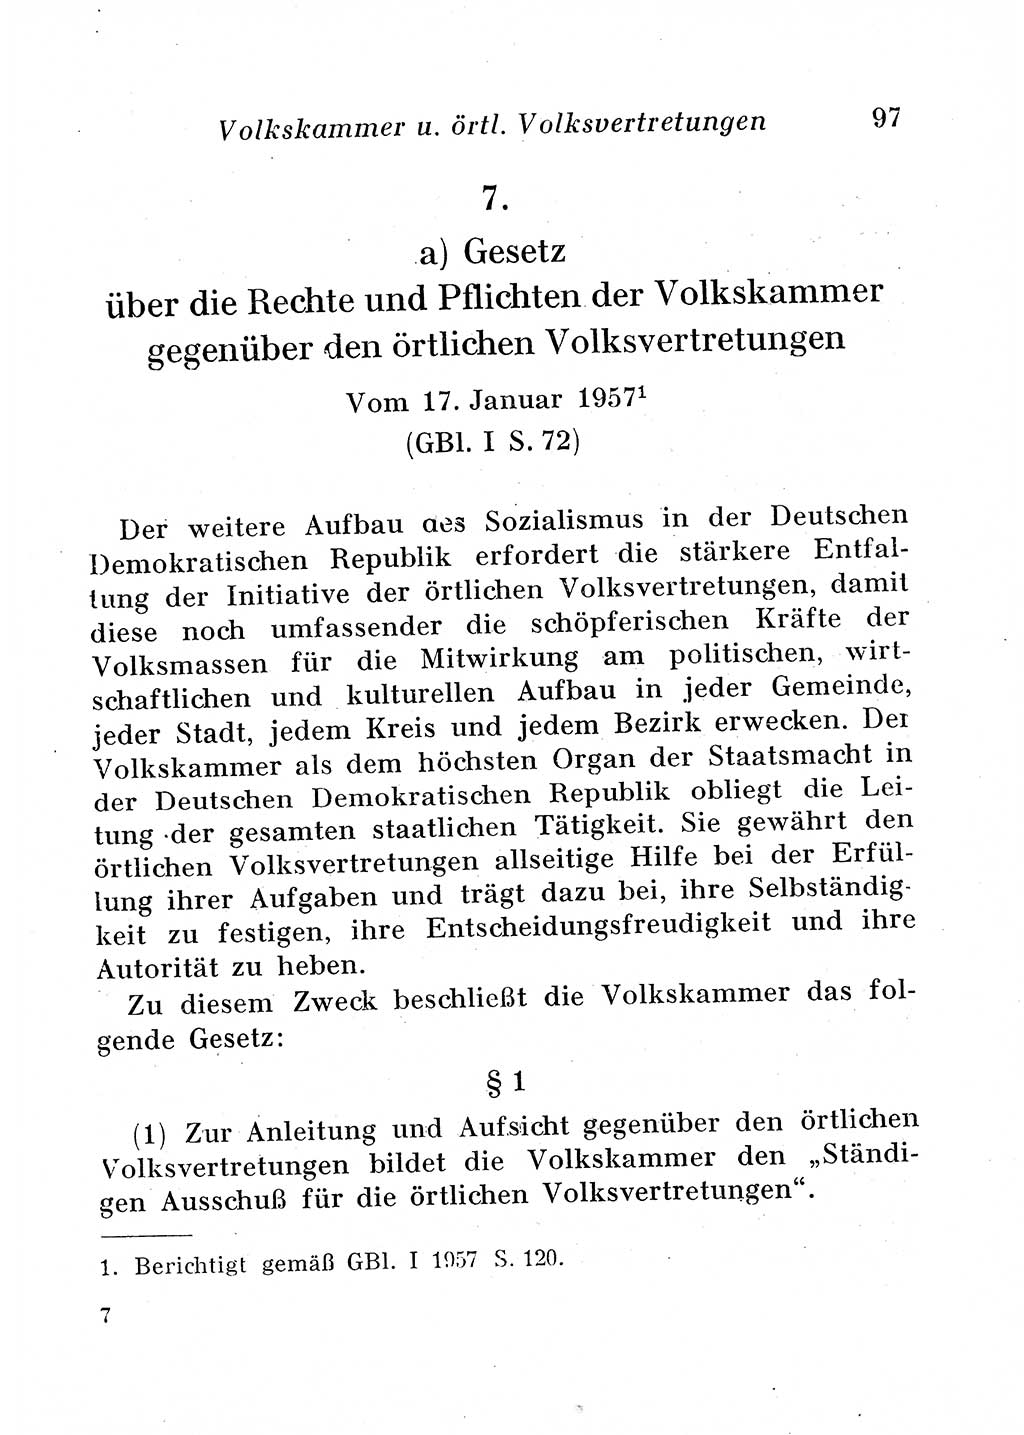 Staats- und verwaltungsrechtliche Gesetze der Deutschen Demokratischen Republik (DDR) 1958, Seite 97 (StVerwR Ges. DDR 1958, S. 97)